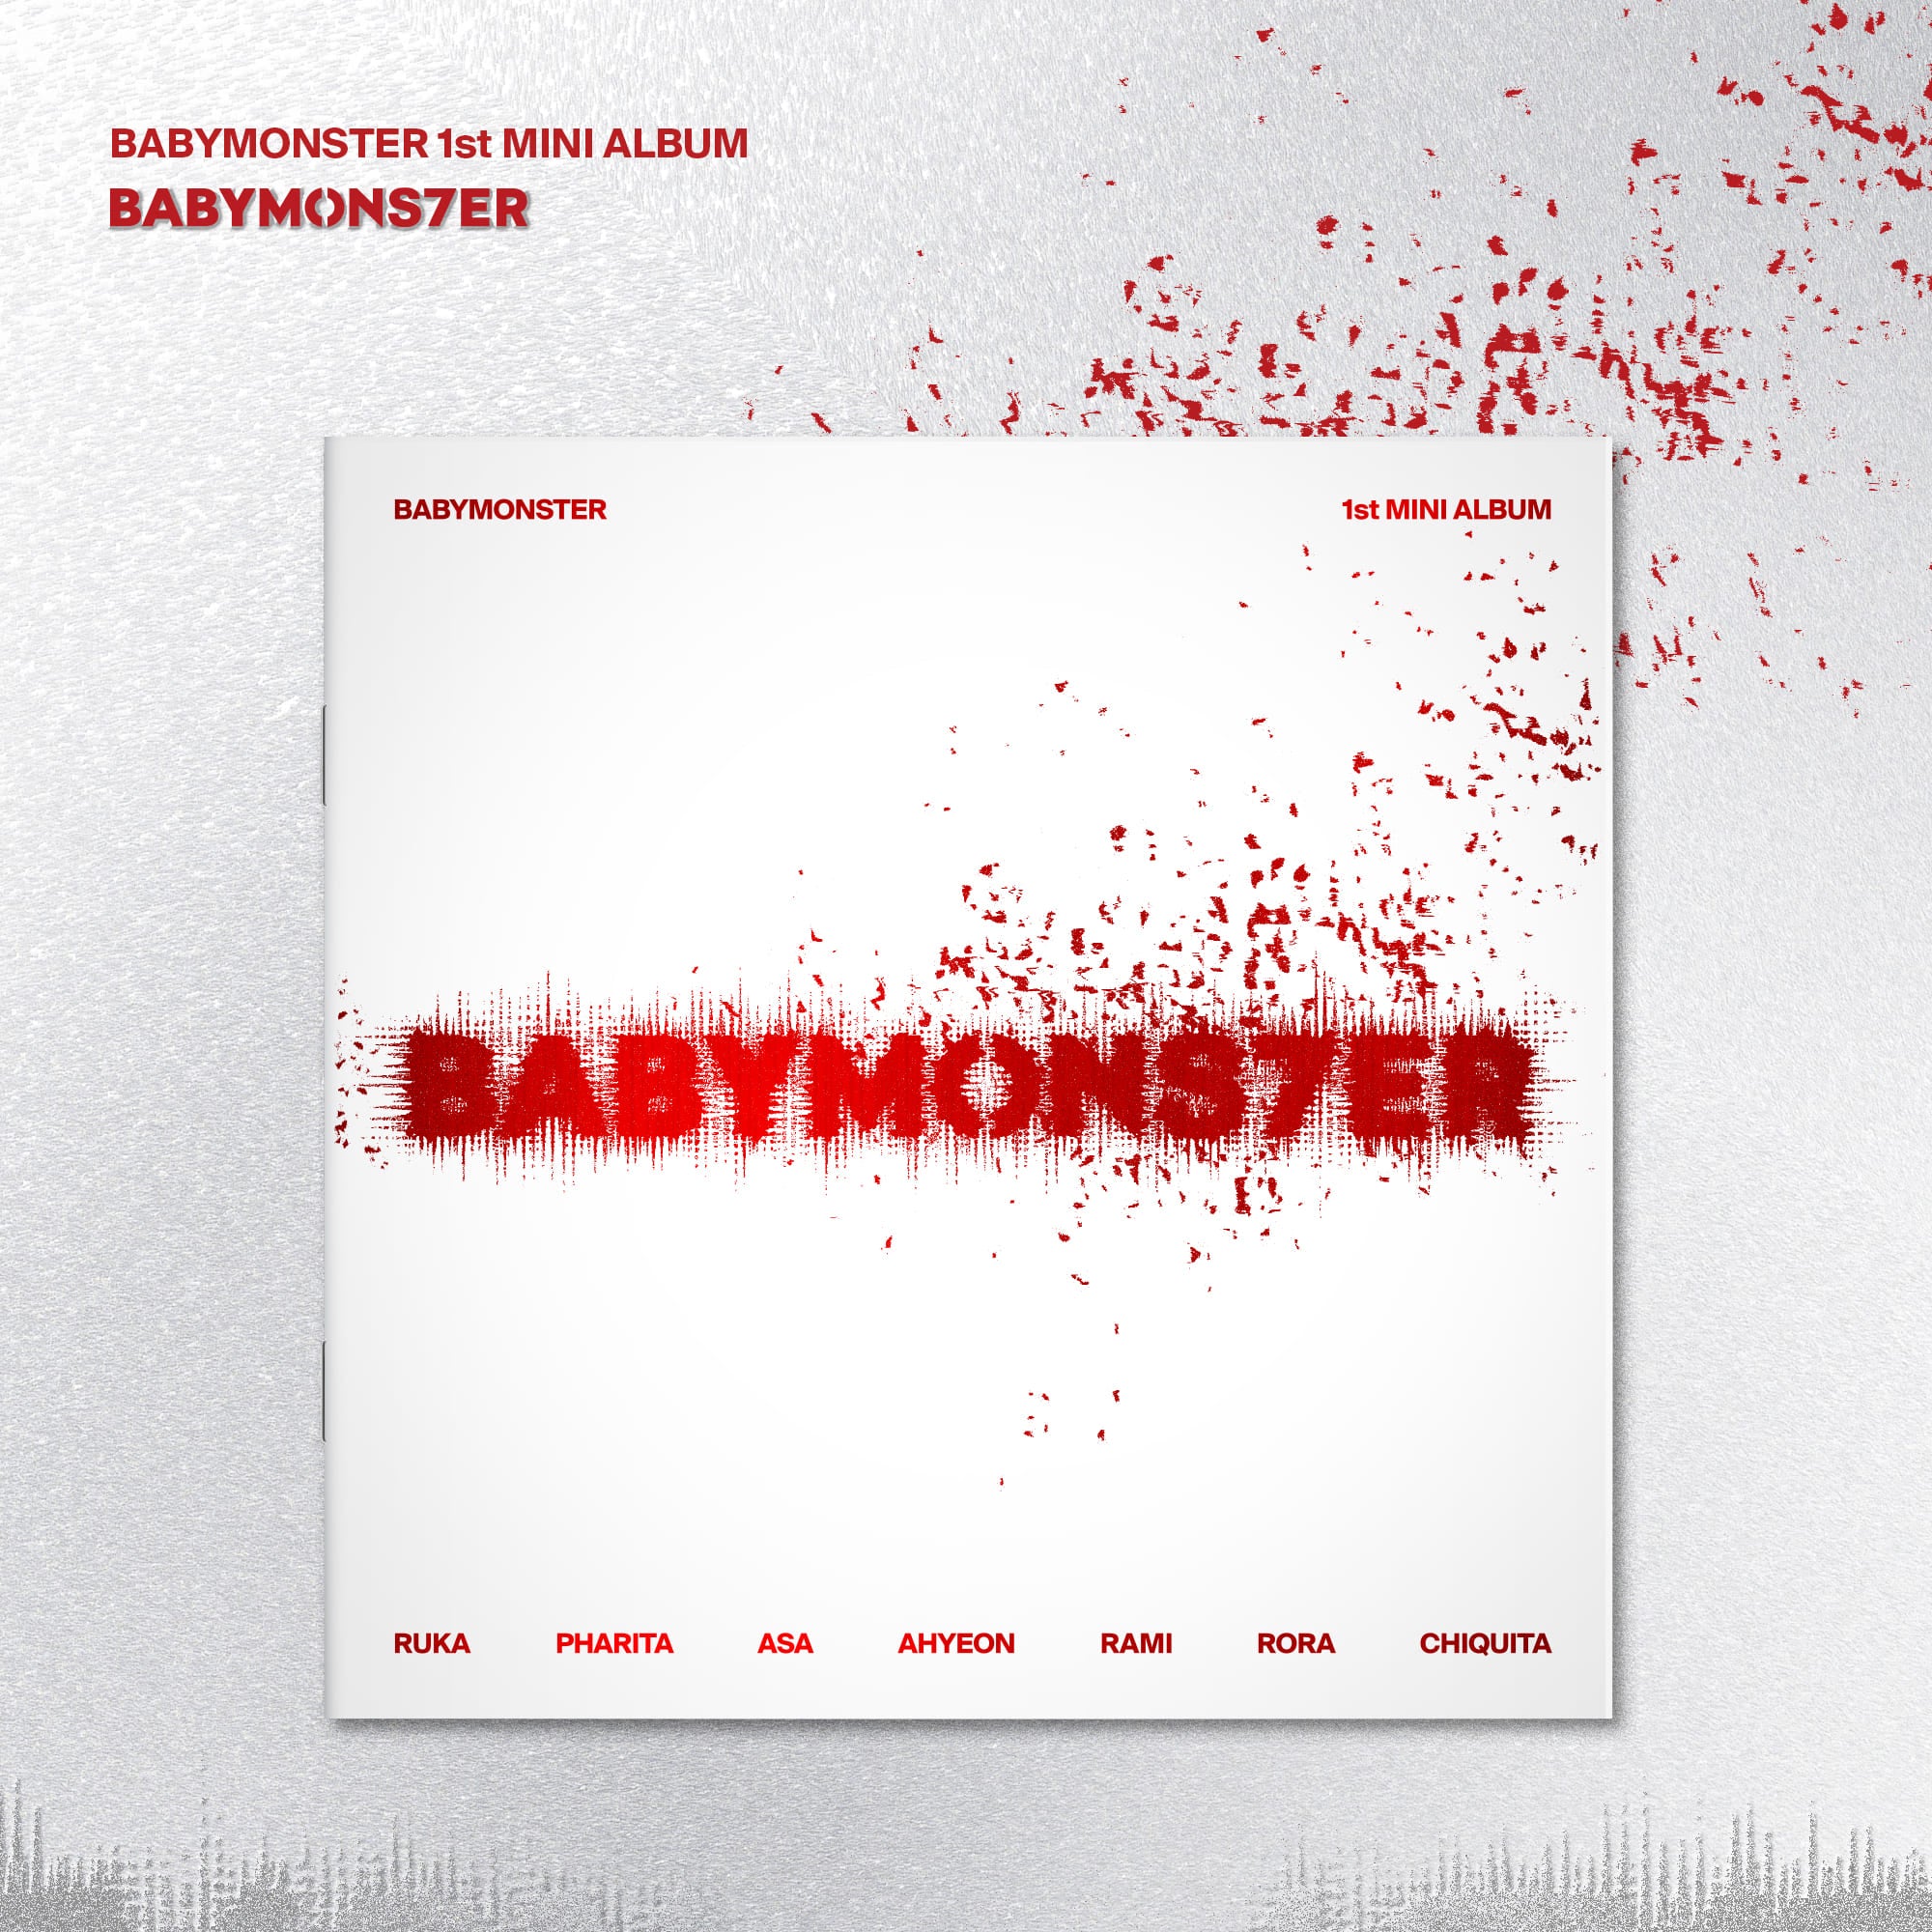 BABYMONSTER 1st Mini Album BABYMONS7ER